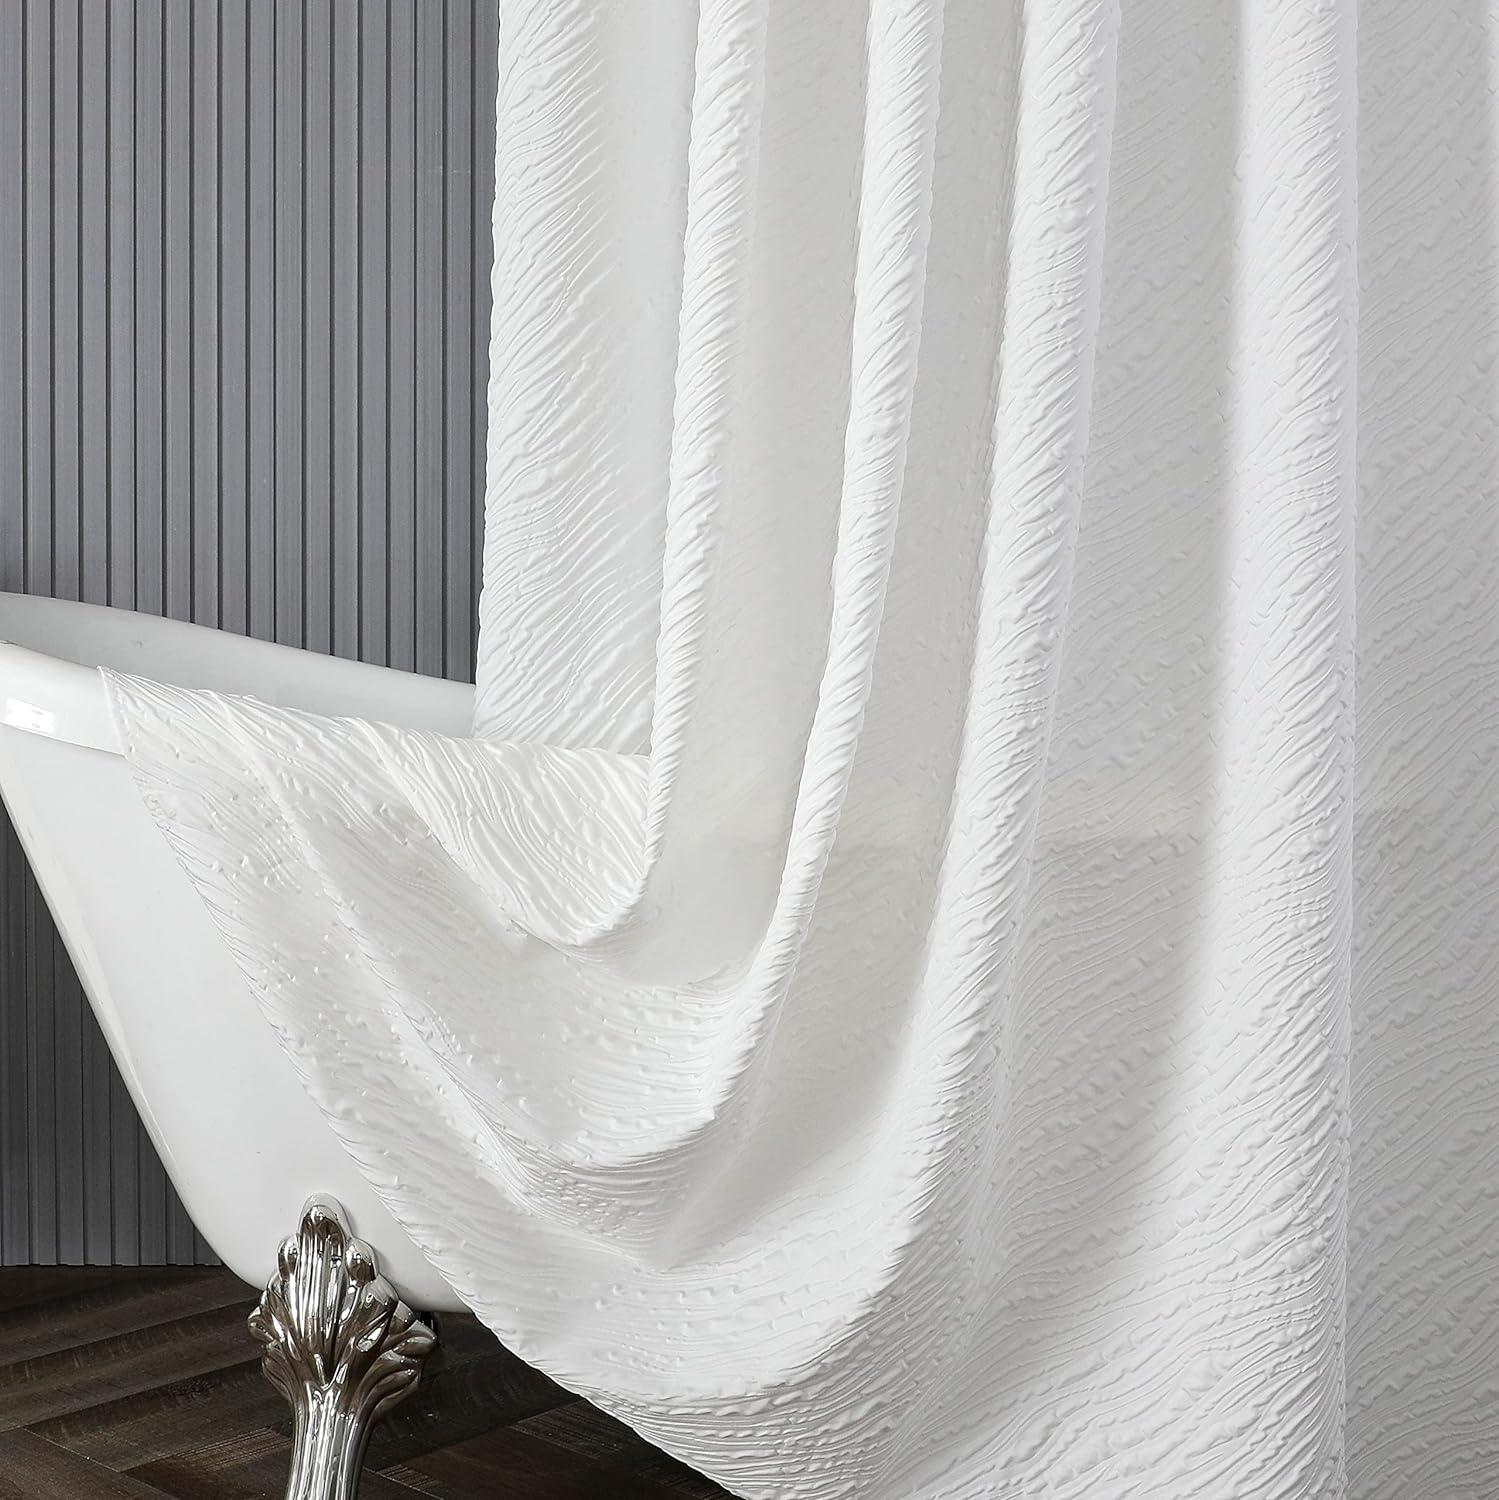 Cortina de ducha blanca para baño, estampado 3D, lavable, tela imperme -  VIRTUAL MUEBLES